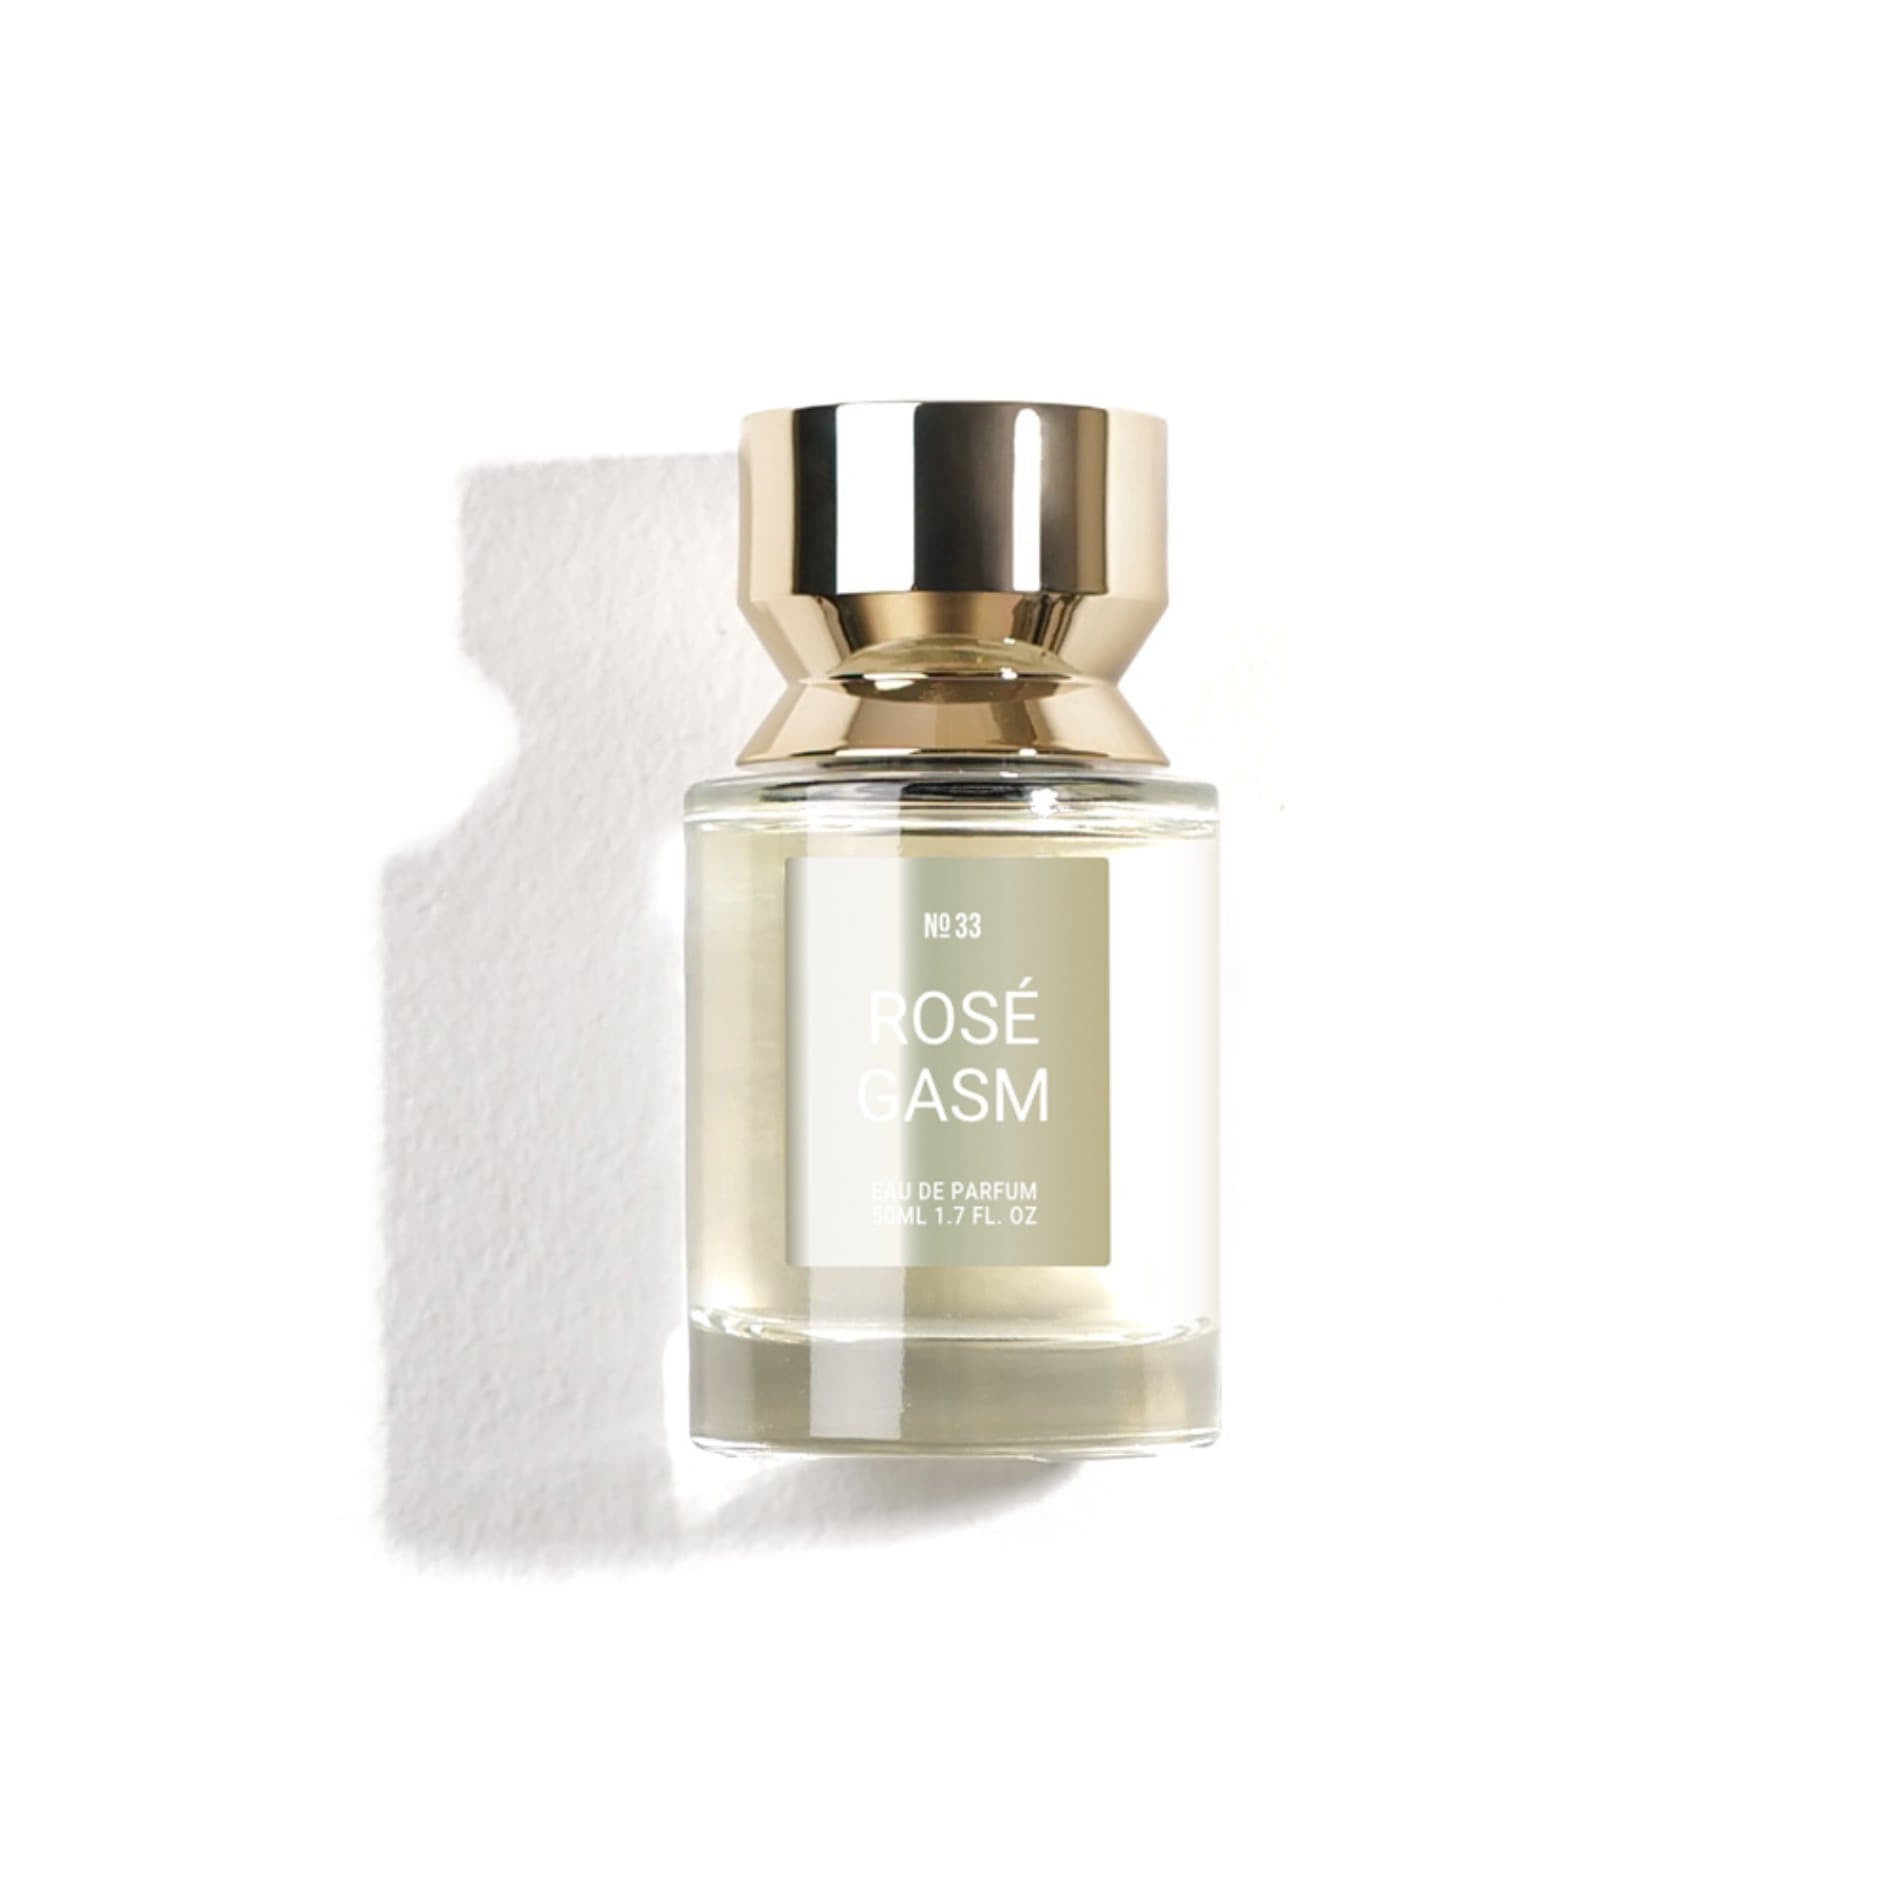 SWG - Eau De Parfum - Rose Gasm No.33 (Discounted)